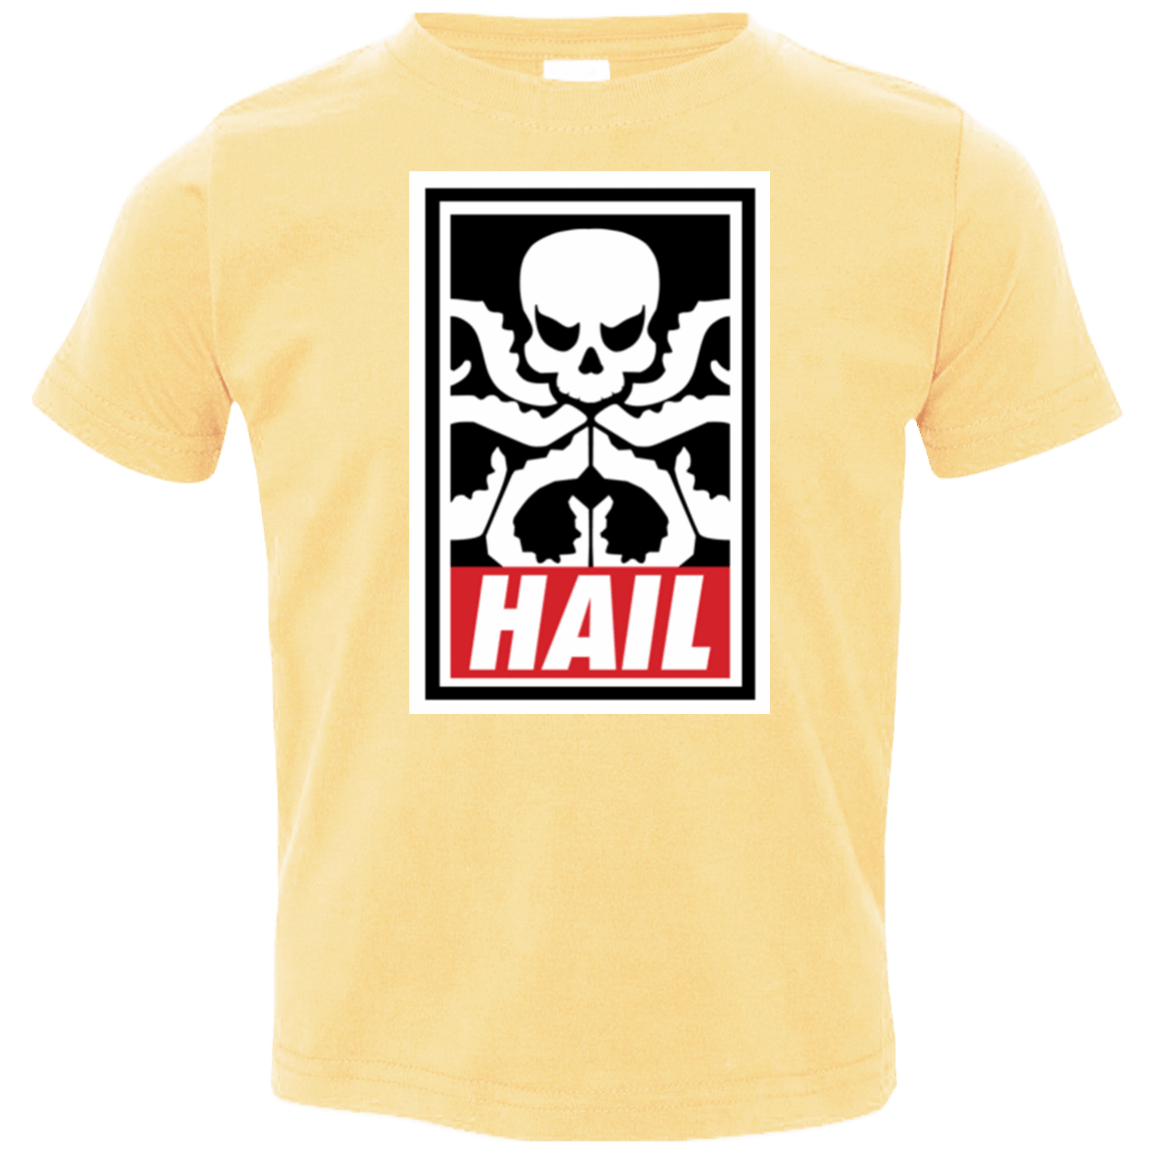 T-Shirts Butter / 2T Hail Hydra Toddler Premium T-Shirt